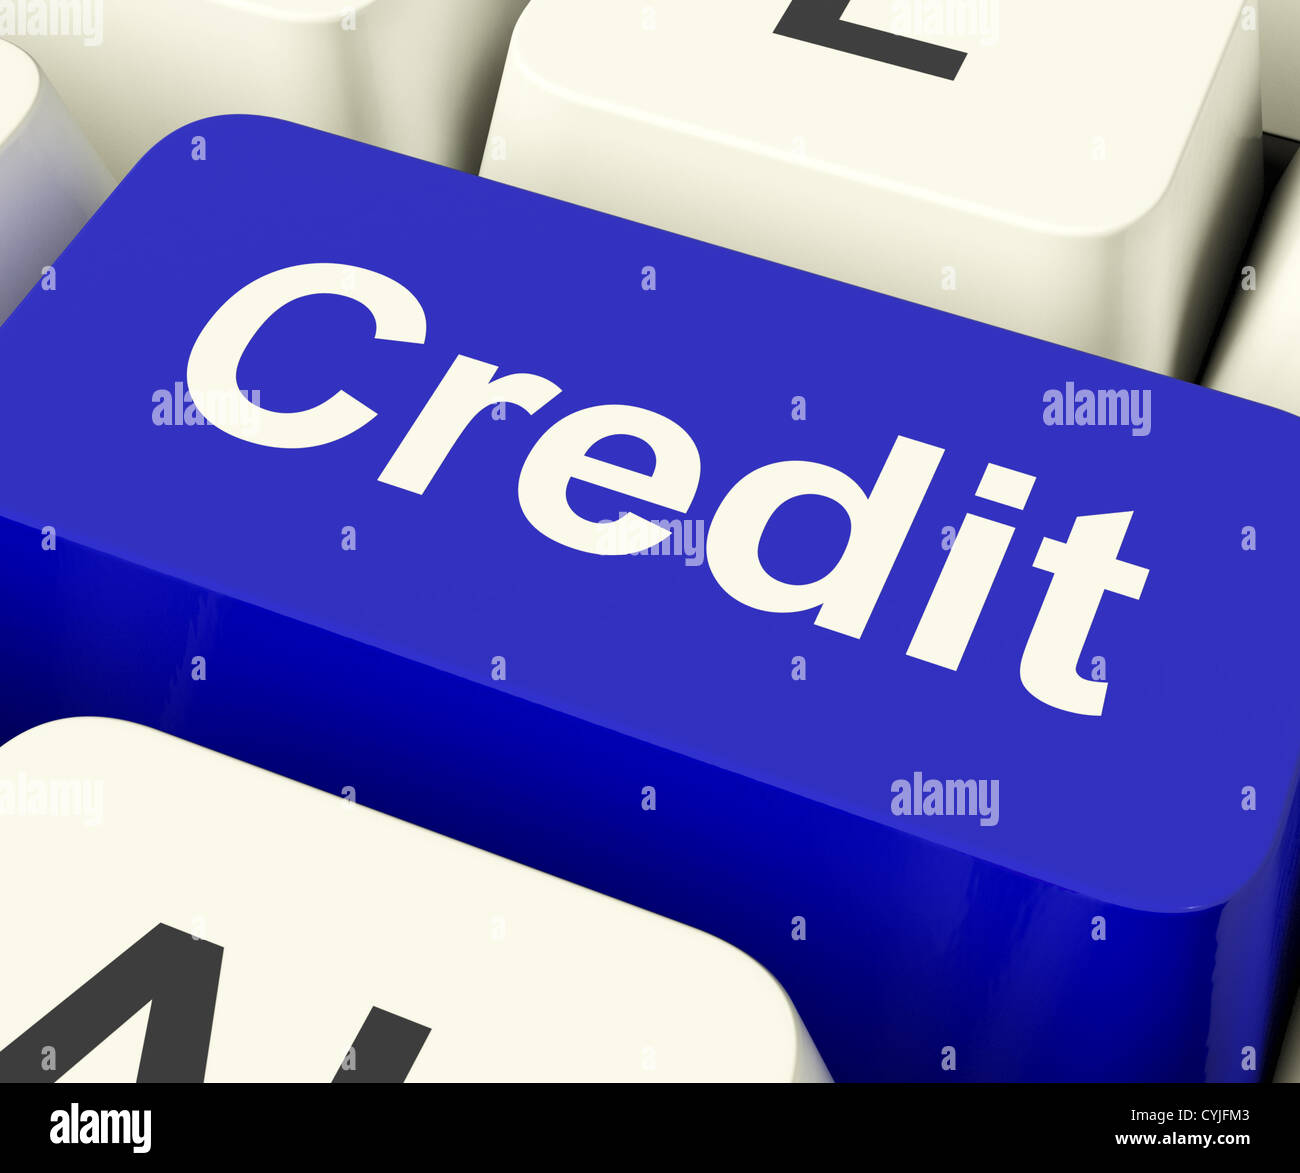 Representa la clave de crédito o préstamo para financiar compras Foto de stock